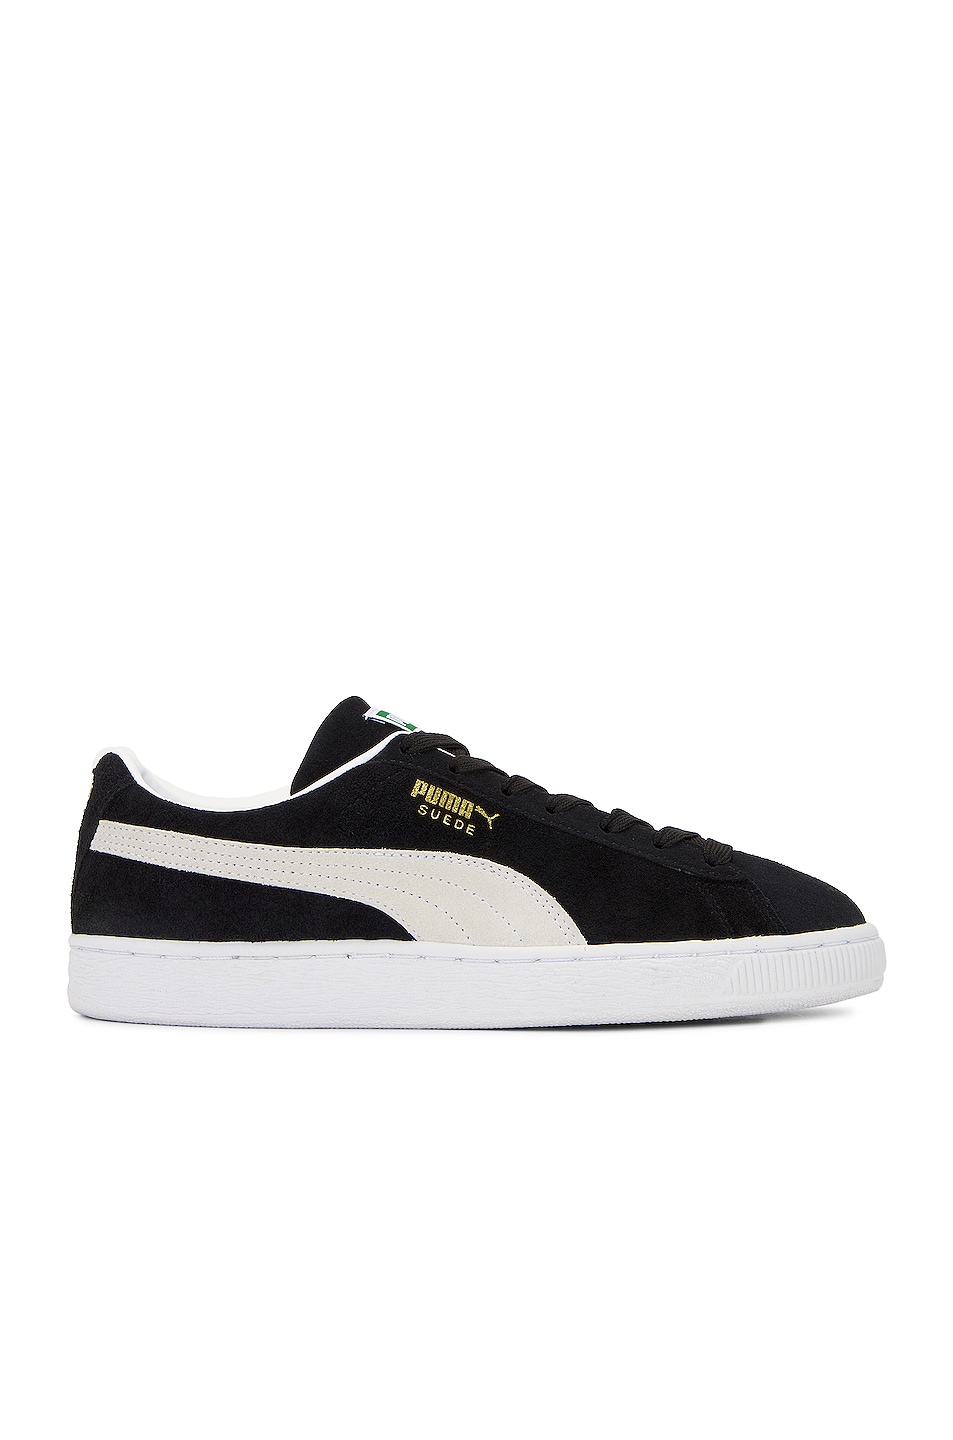 Image 1 of Puma Select Suede Classic Xxi Sneakers in Puma Black & Puma White